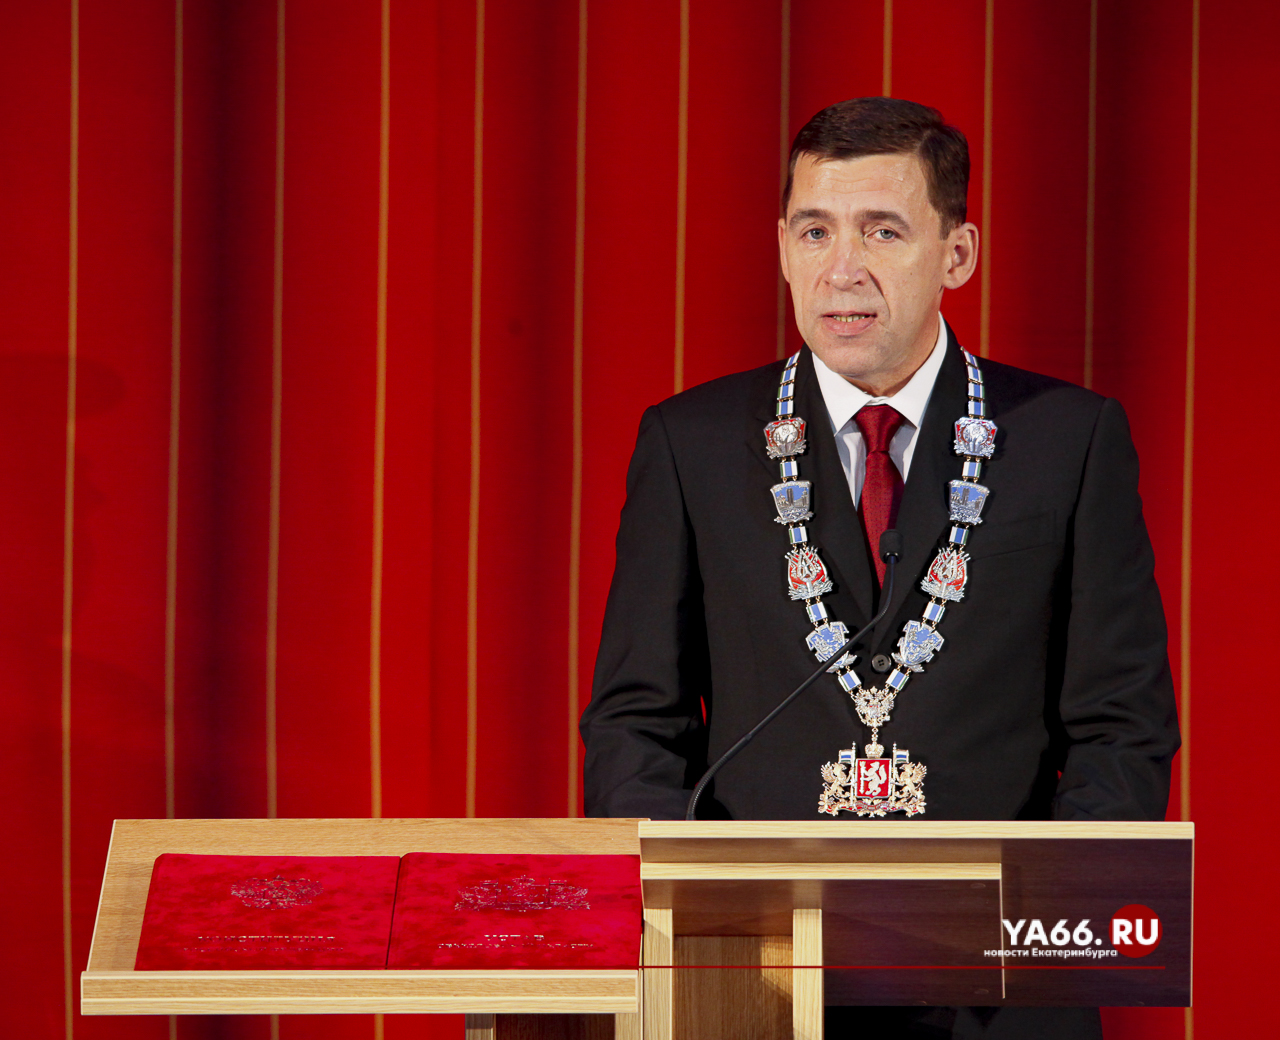 Евгений Куйвашев подал документы на участие в выборах губернатора Свердловской области